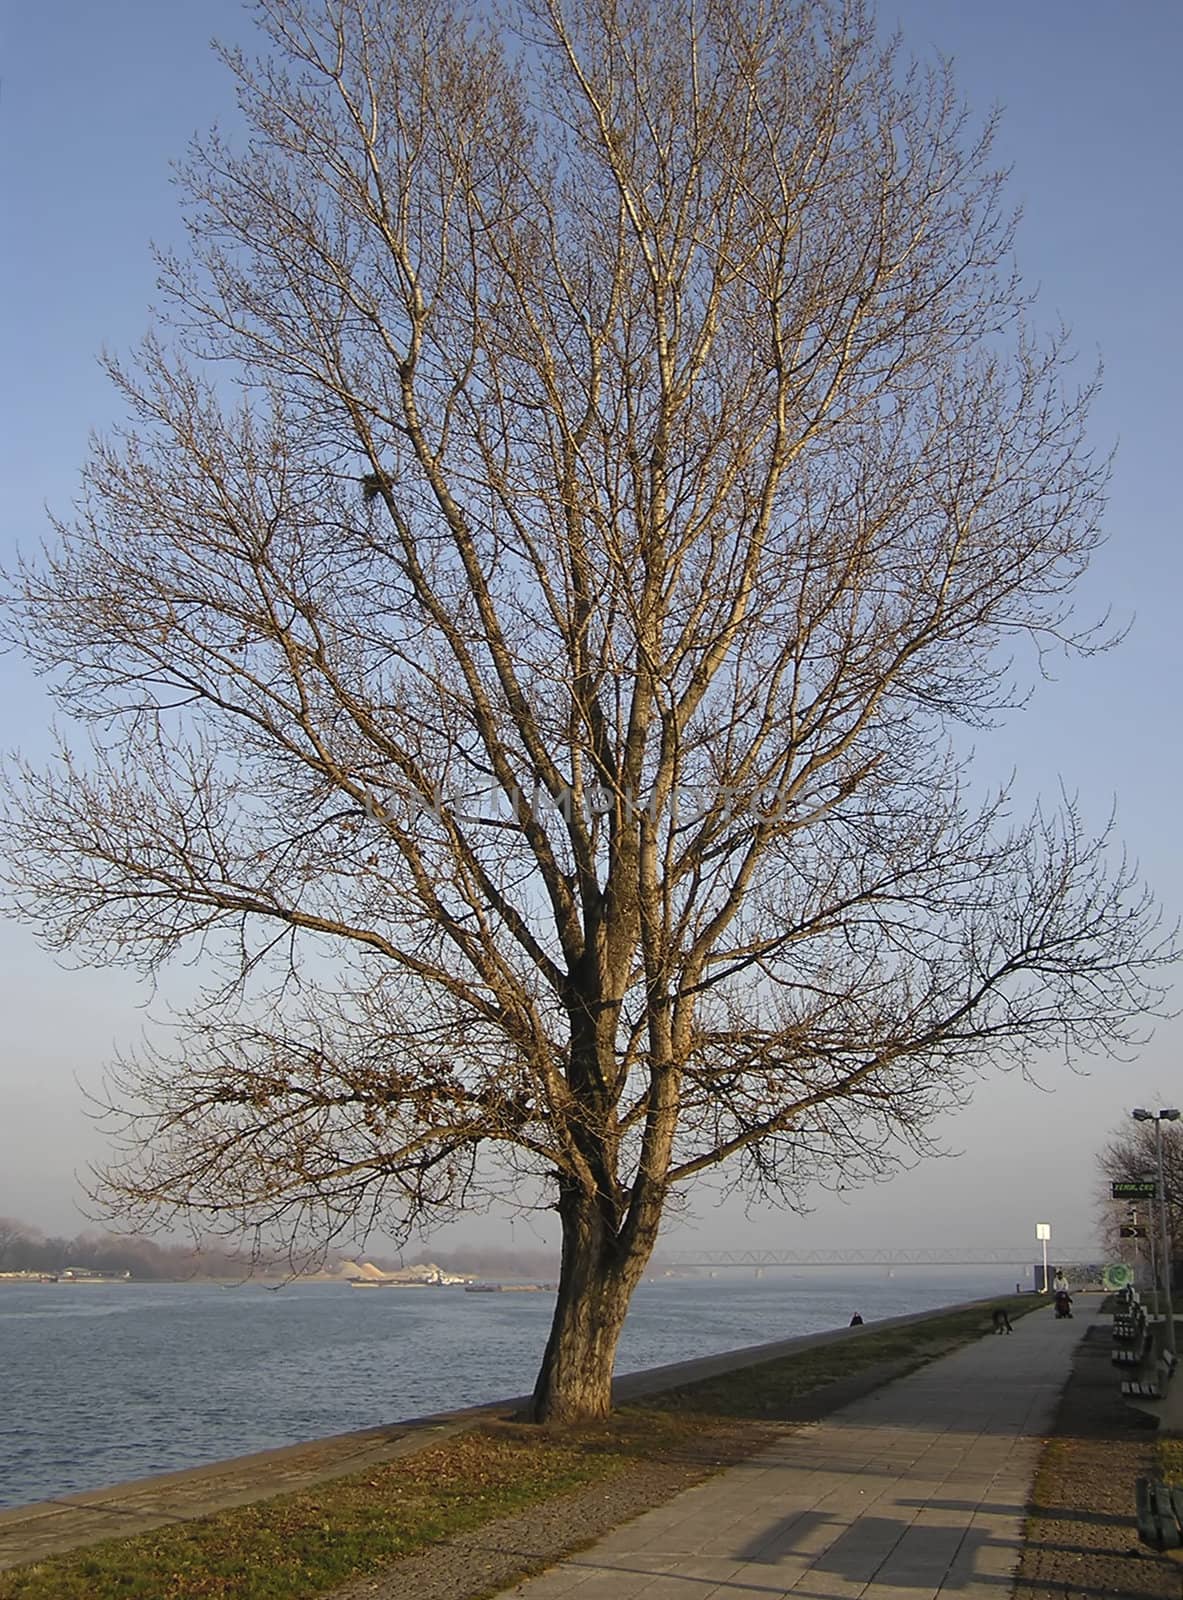 Tree At River Bank by penta